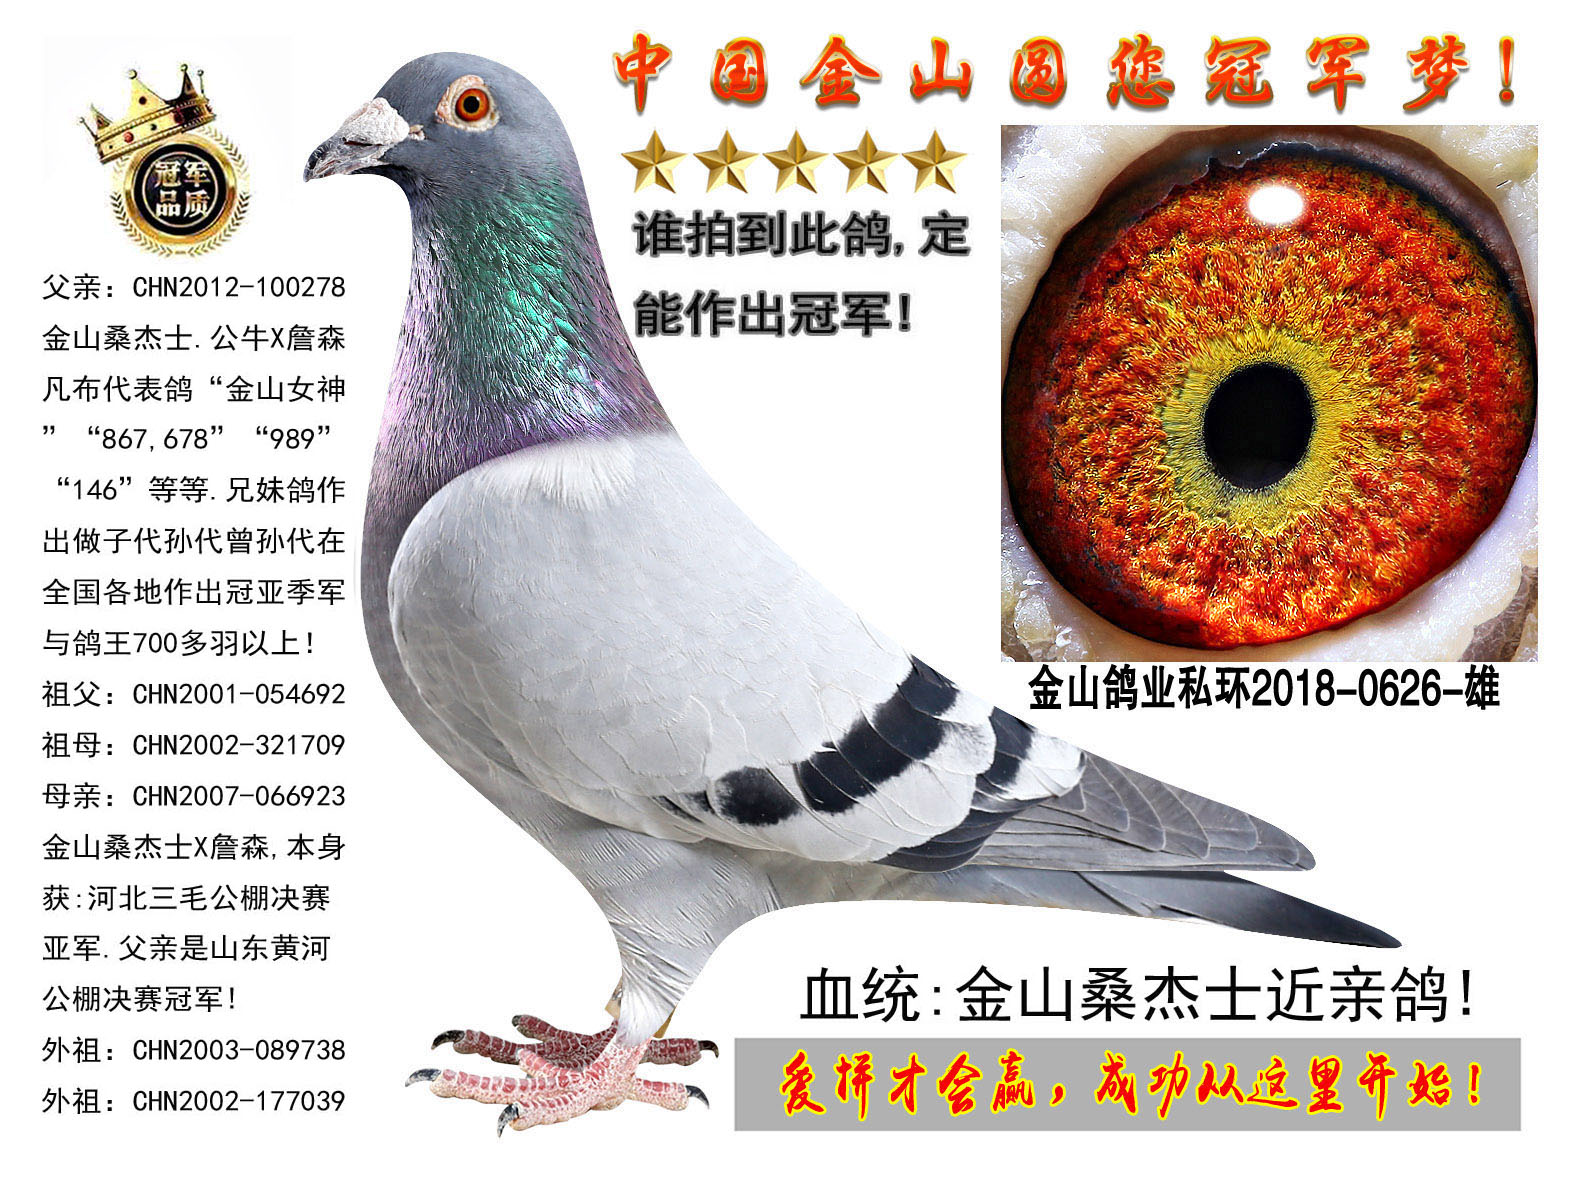 中国金山鸽业 - 中信网铭鸽展厅 www.ag188.com